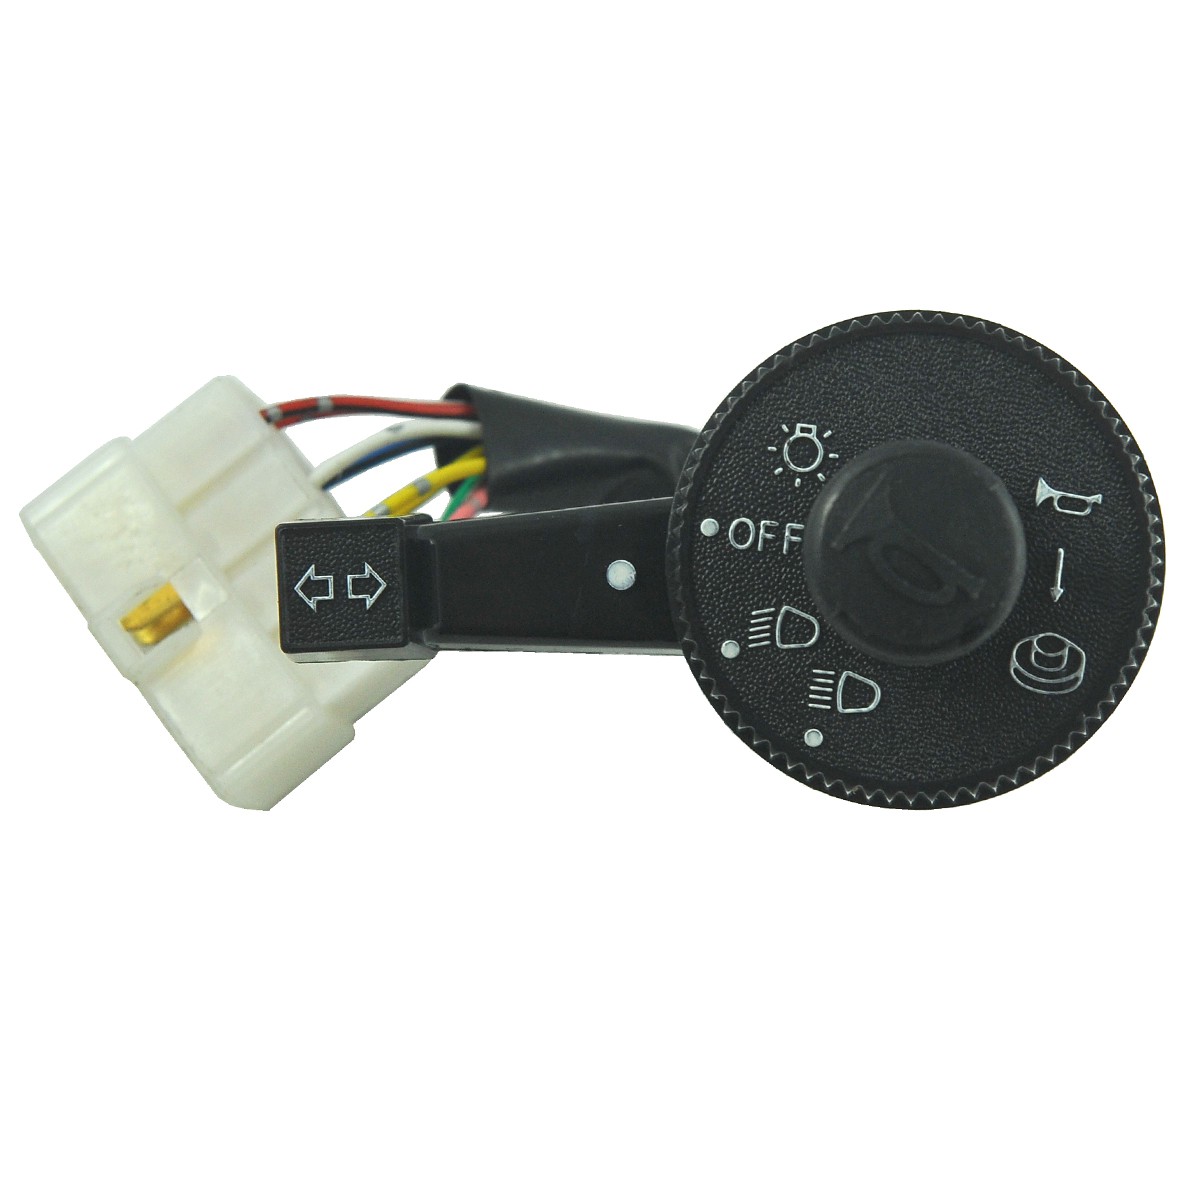 Interruptor de luz / Kubota L2050/L2250/L2850/L3250/L3408/L4508/M5000 / 31351-32100